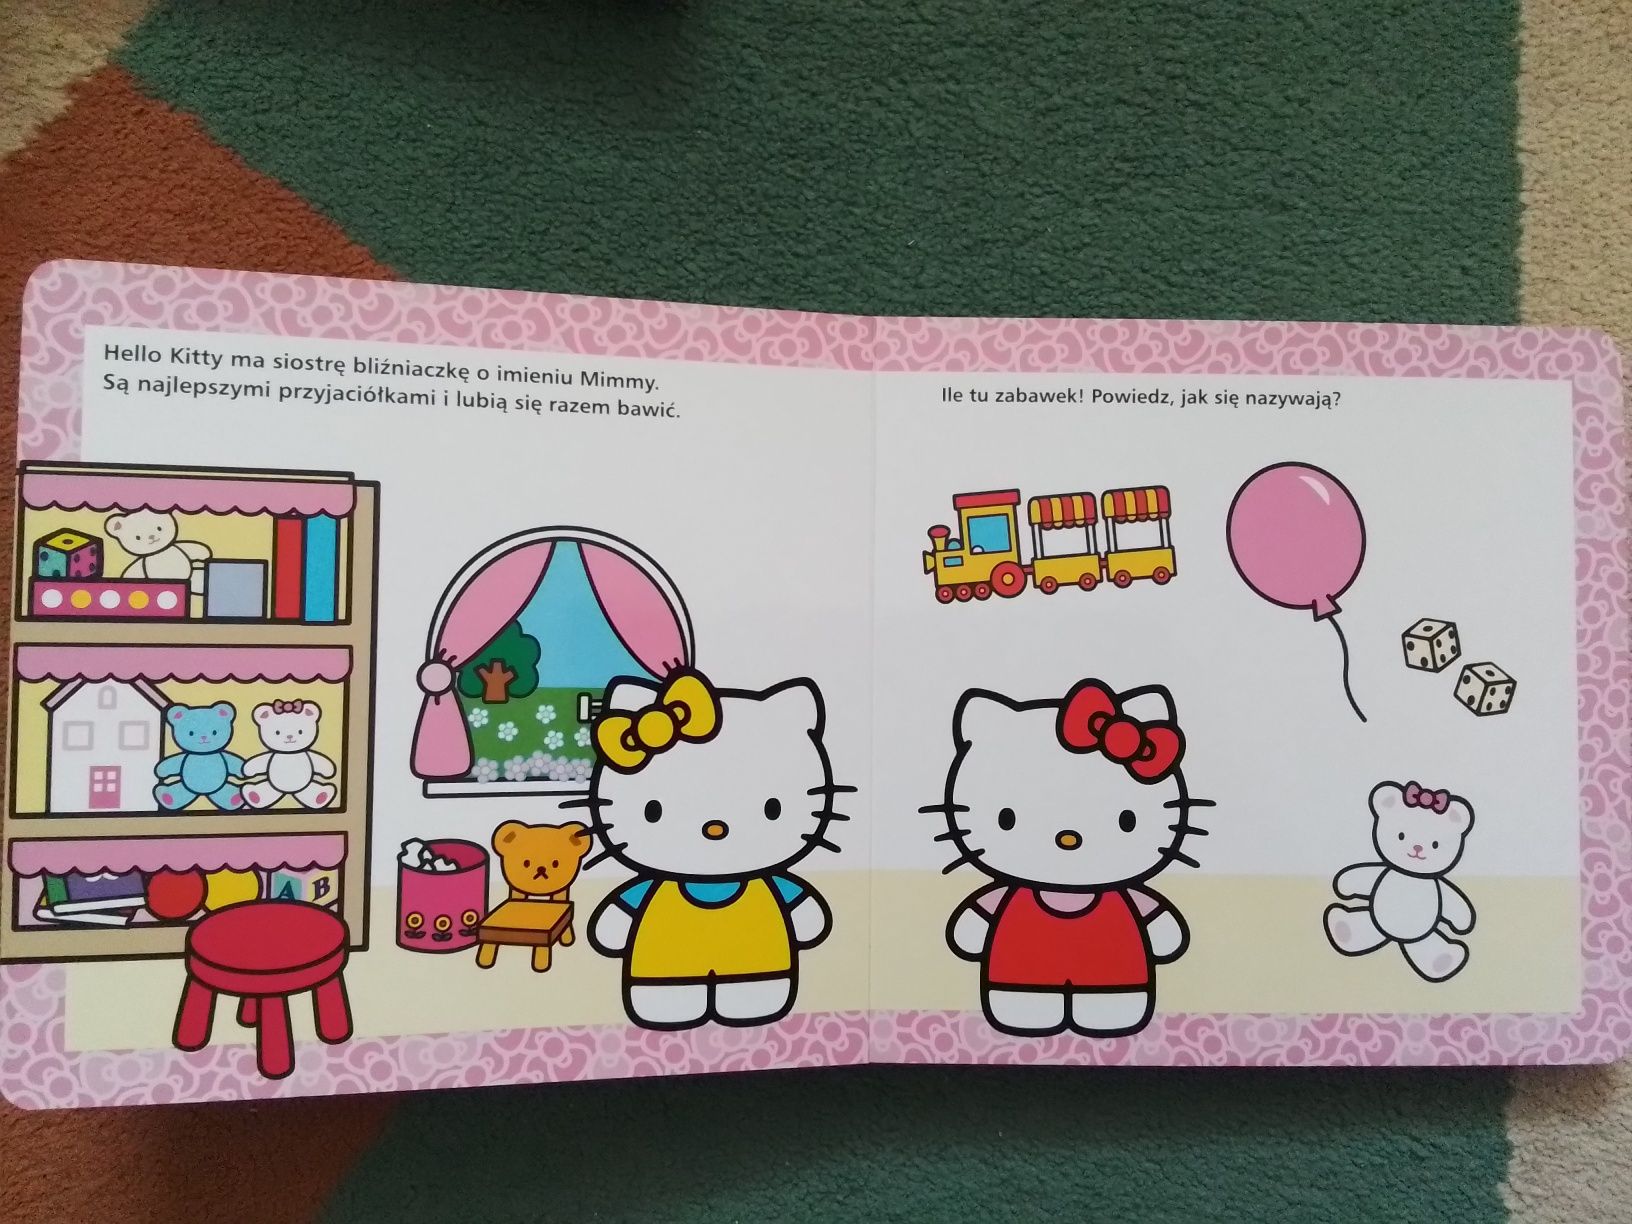 Książka Rodzinka Hello Kitty